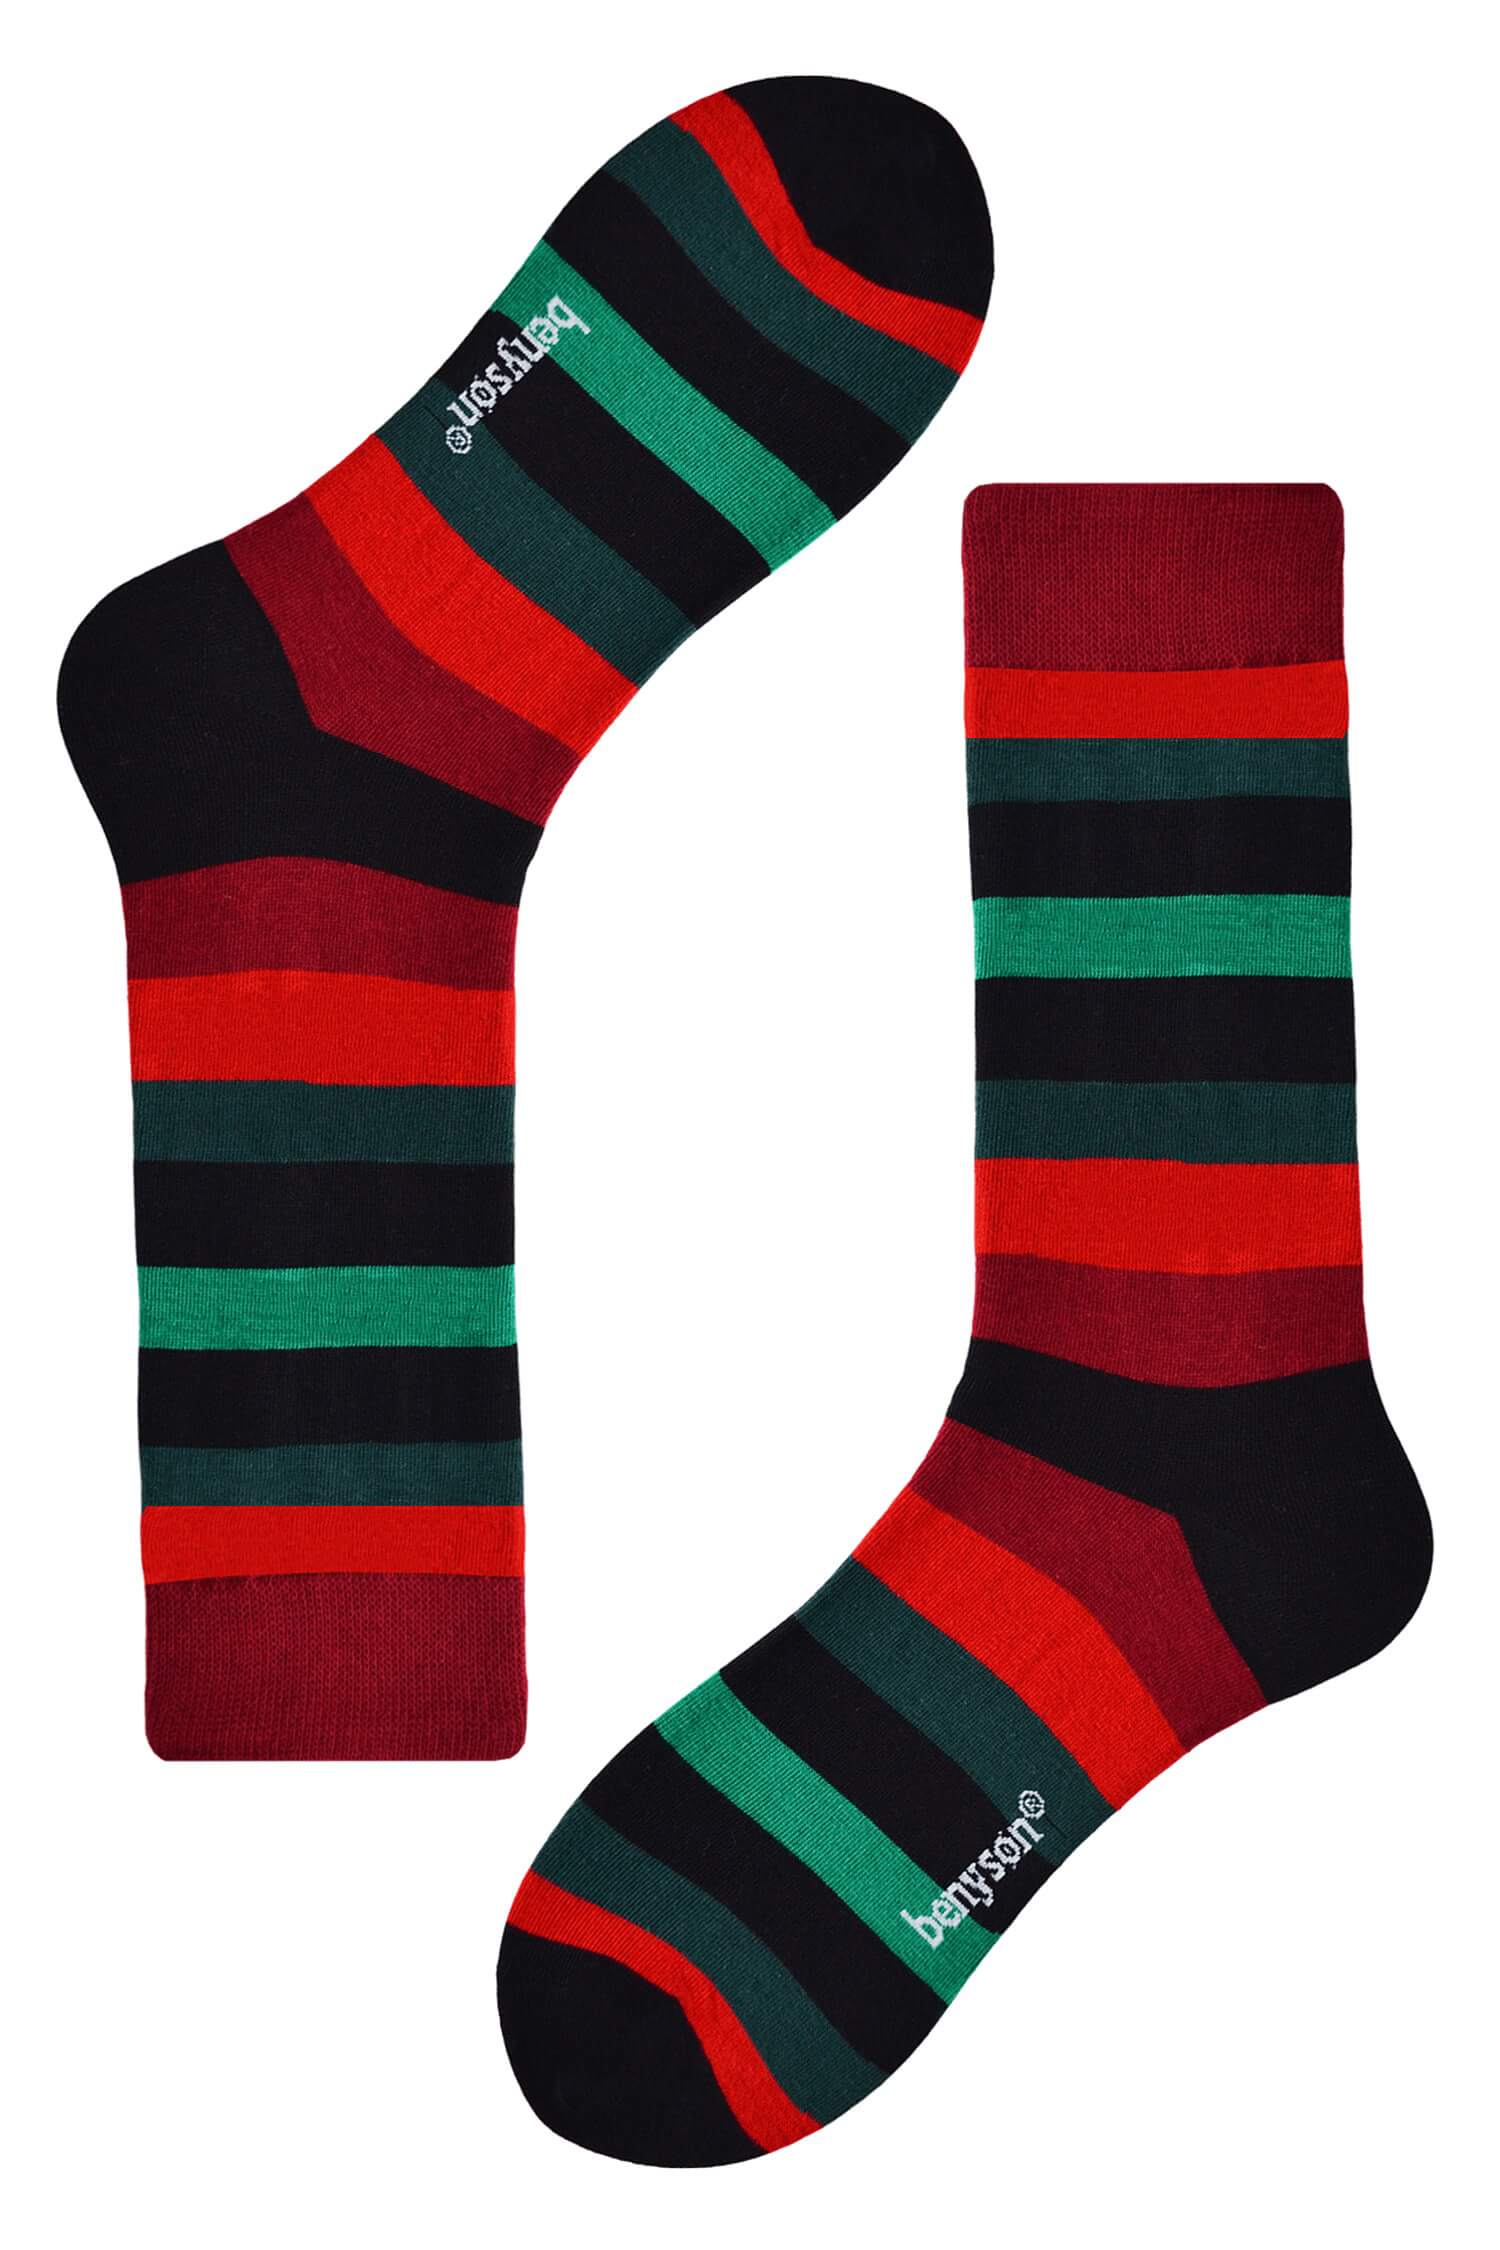 Color stripes vysoké ponožky 0508 36-40 vícebarevná